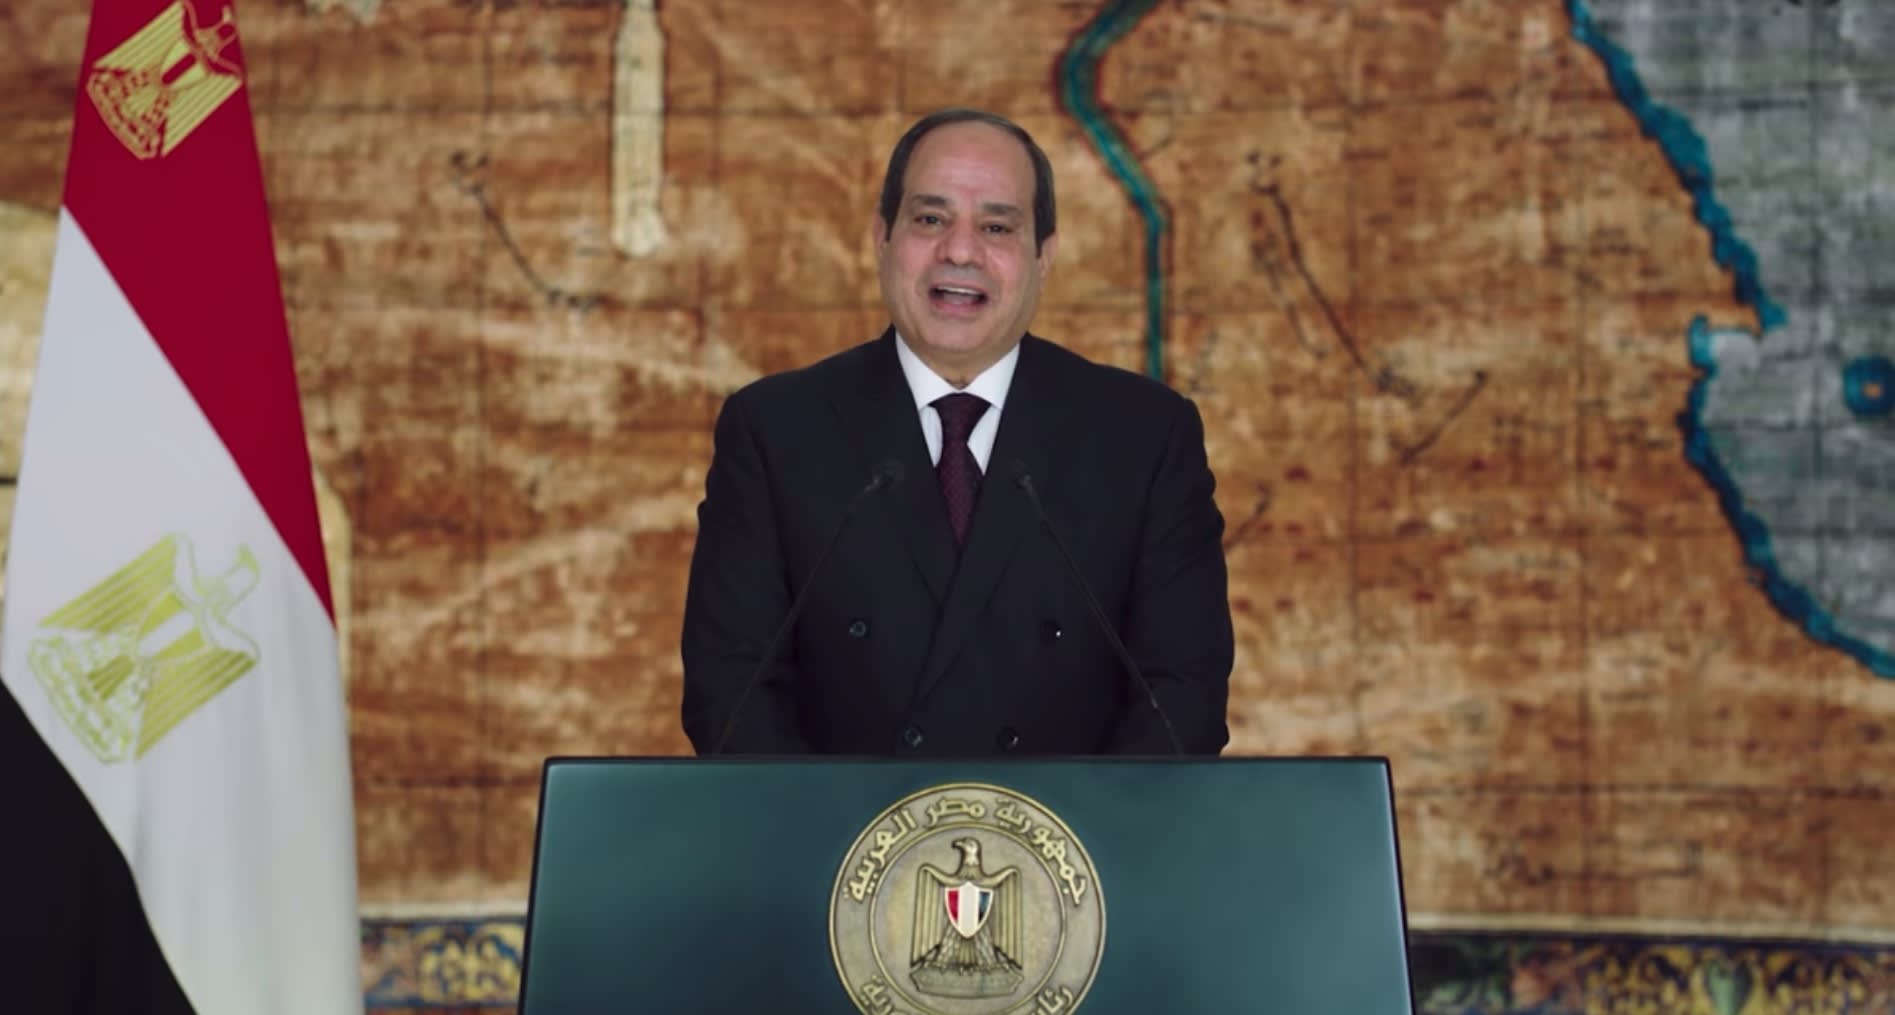  الرئيس المصري، عبدالفتاح السيسي